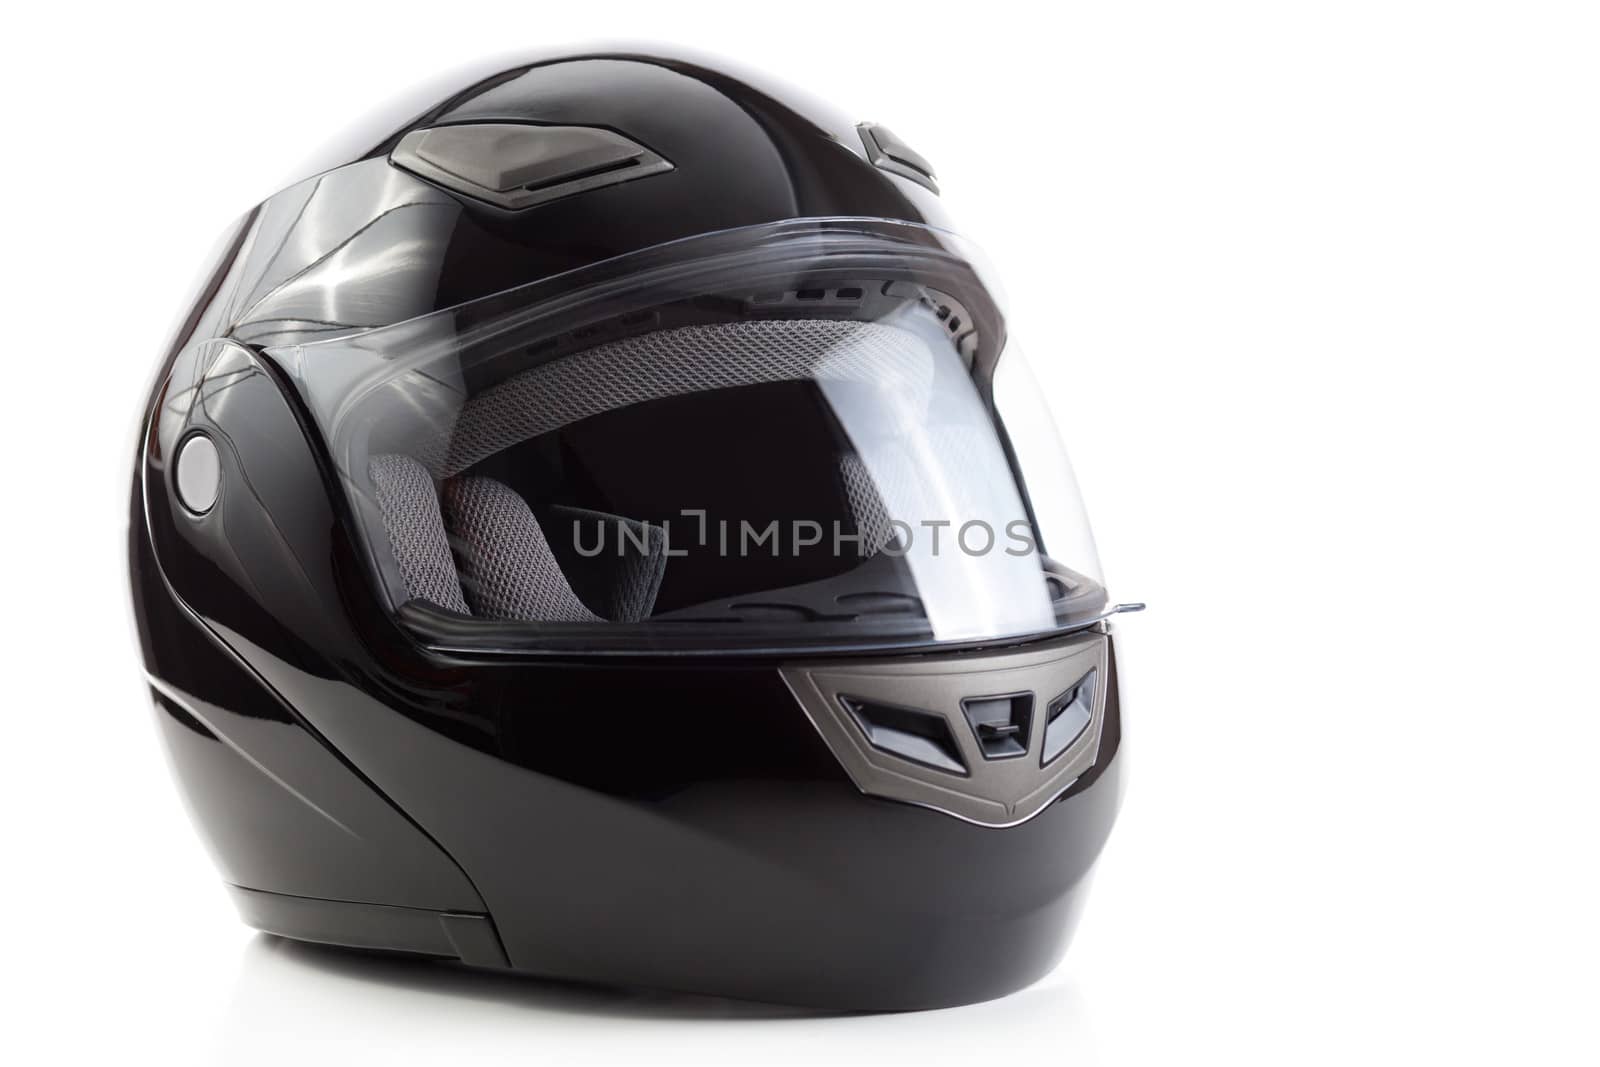 Black, glossy motorcycle helmet by Kor